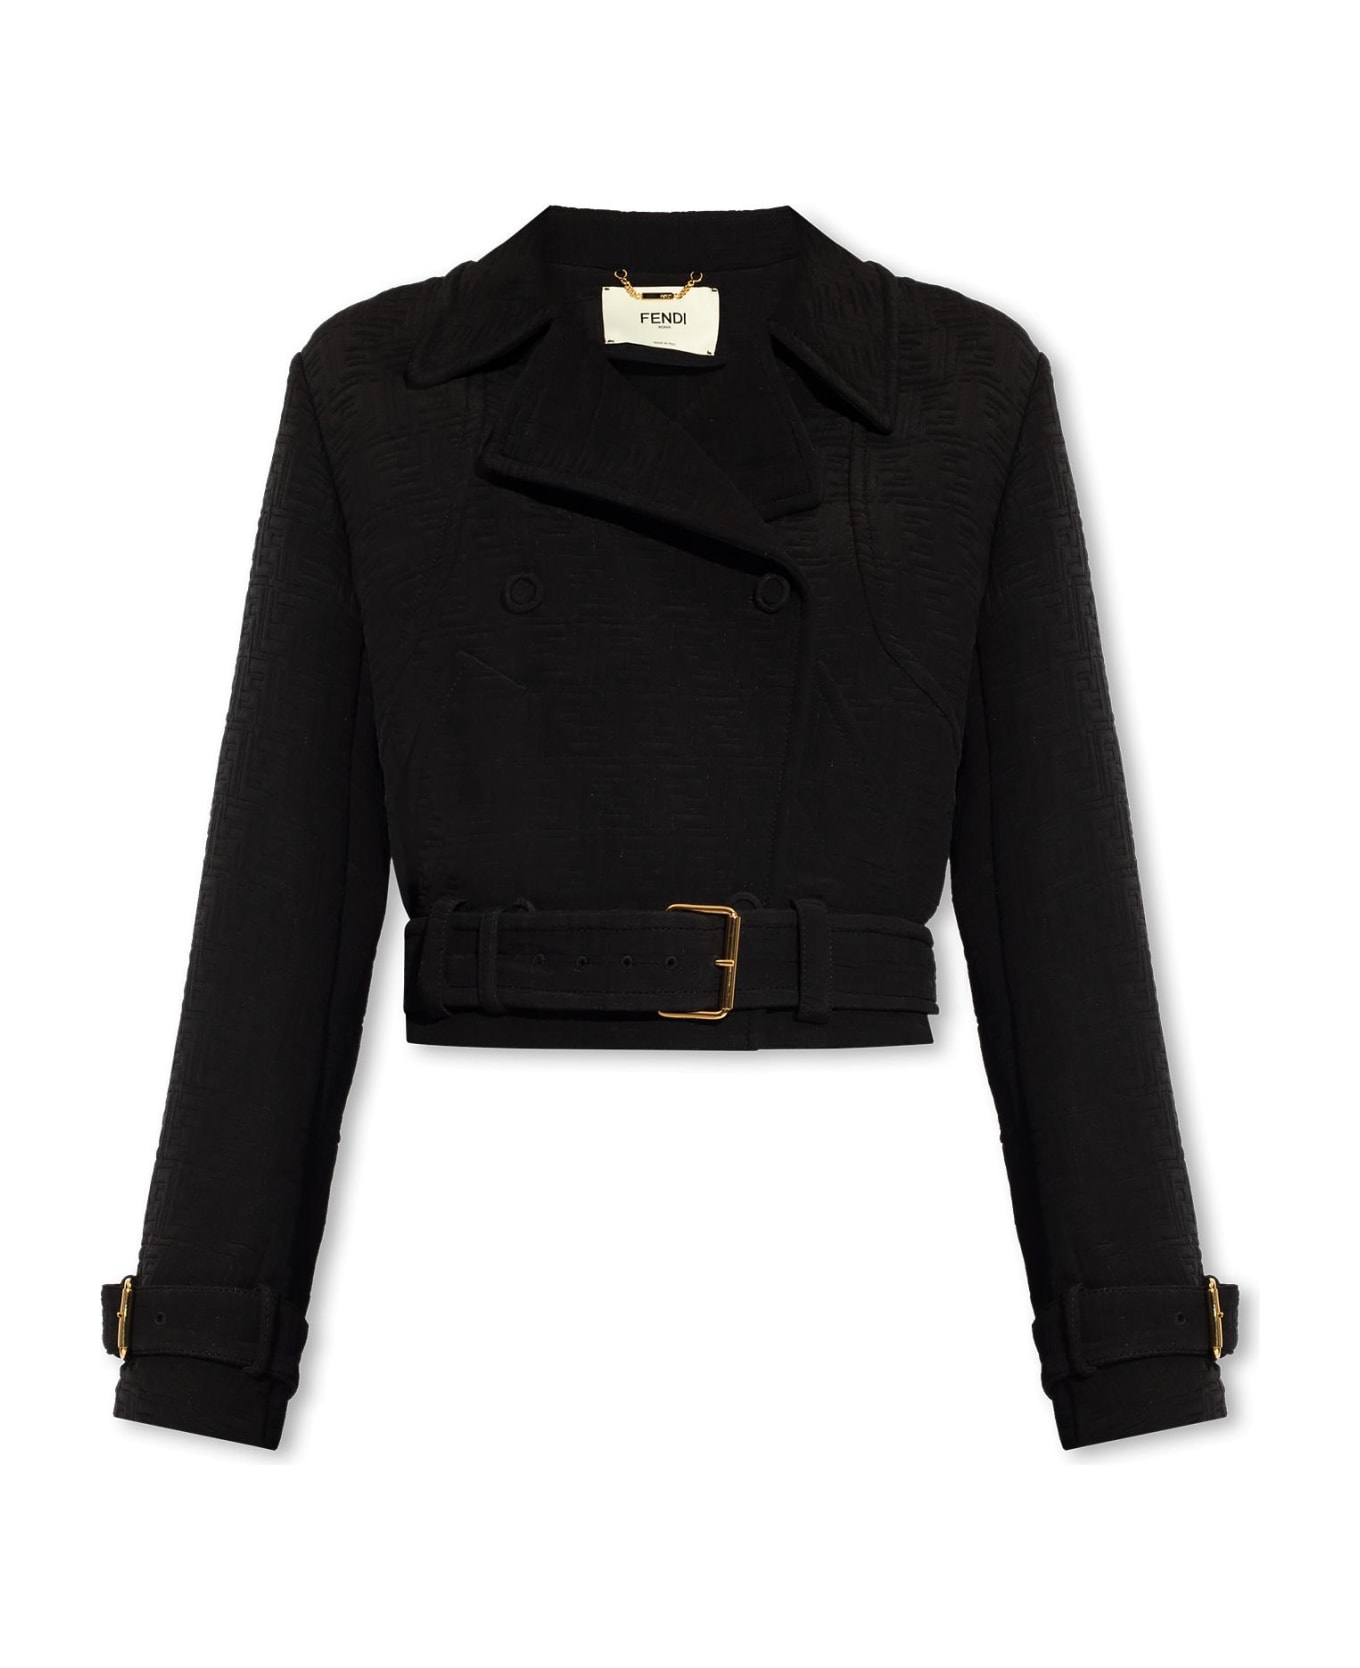 Fendi Jacket With Monogram - Black